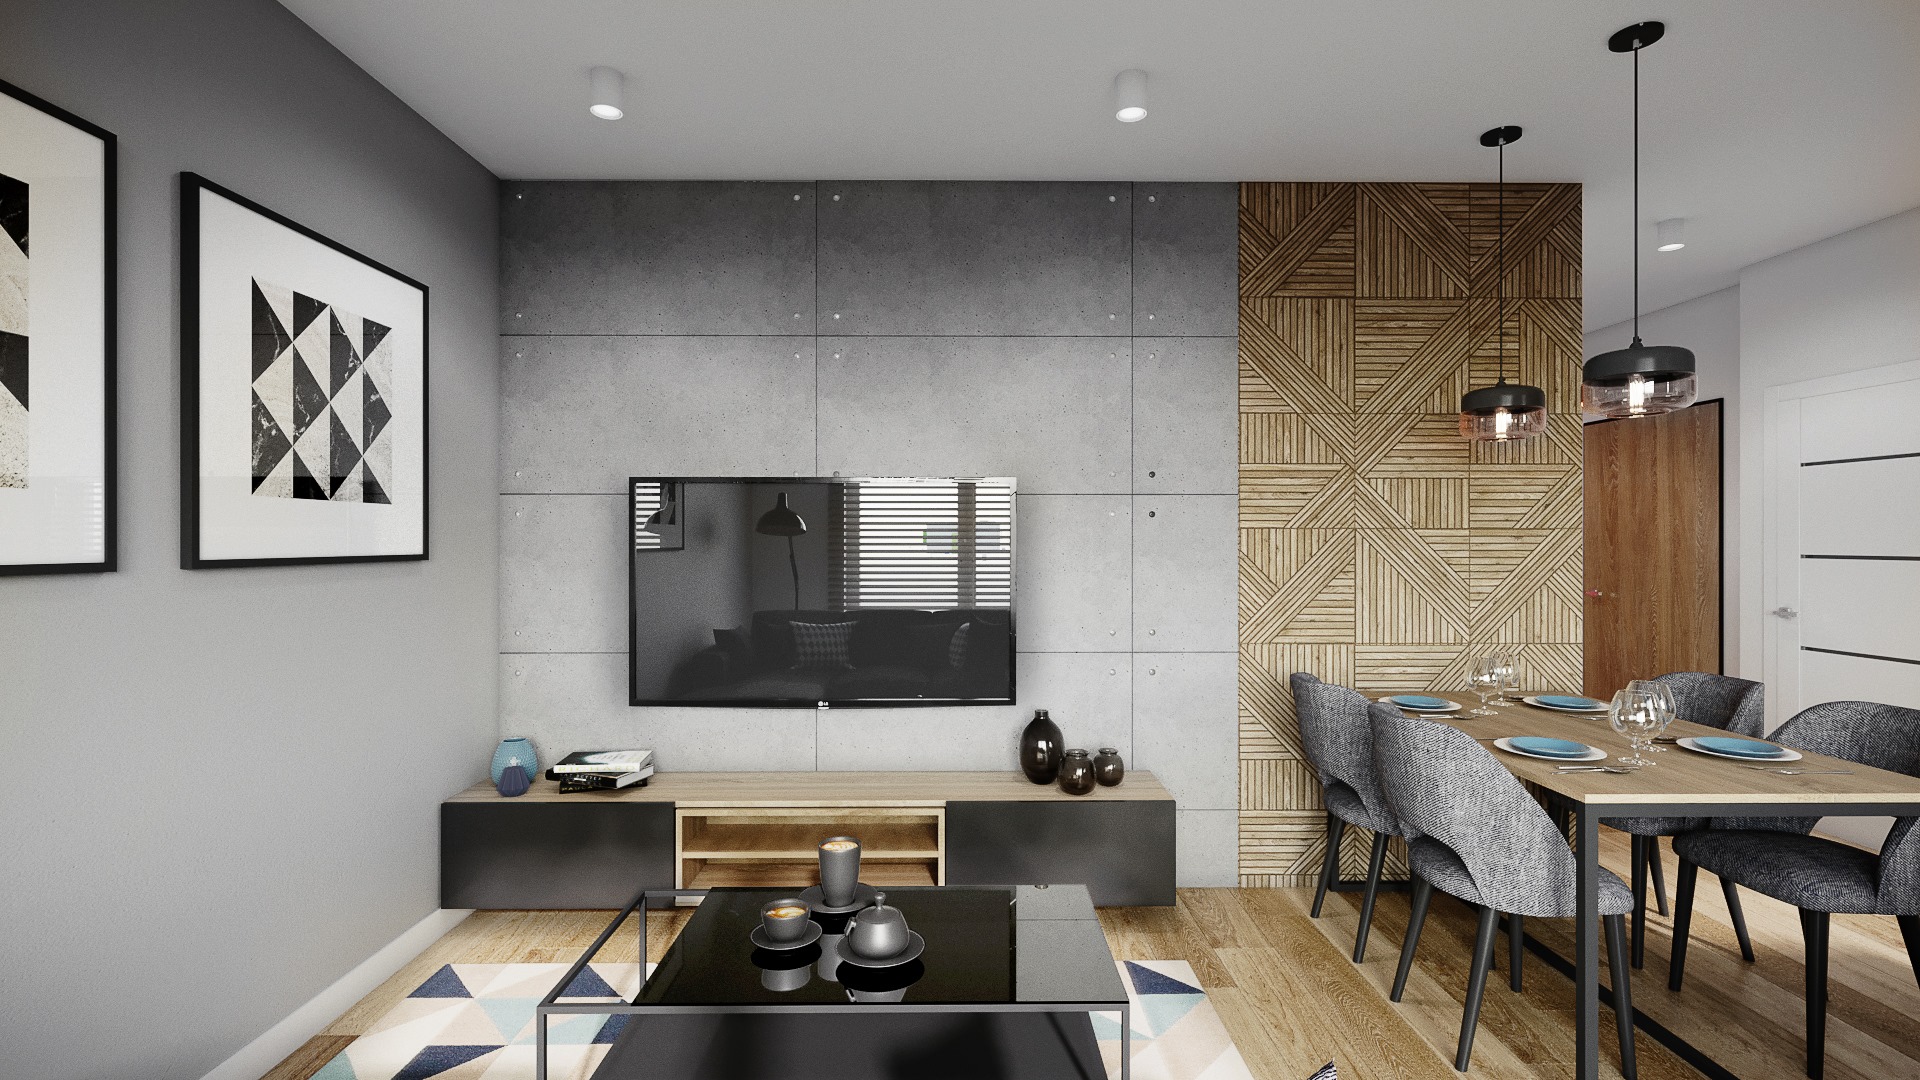 Salon w stylu loft można urządzić też w małym mieszkaniu w bloku. Projekt: Justyna Krupka, studio projektowe Przestrzenie